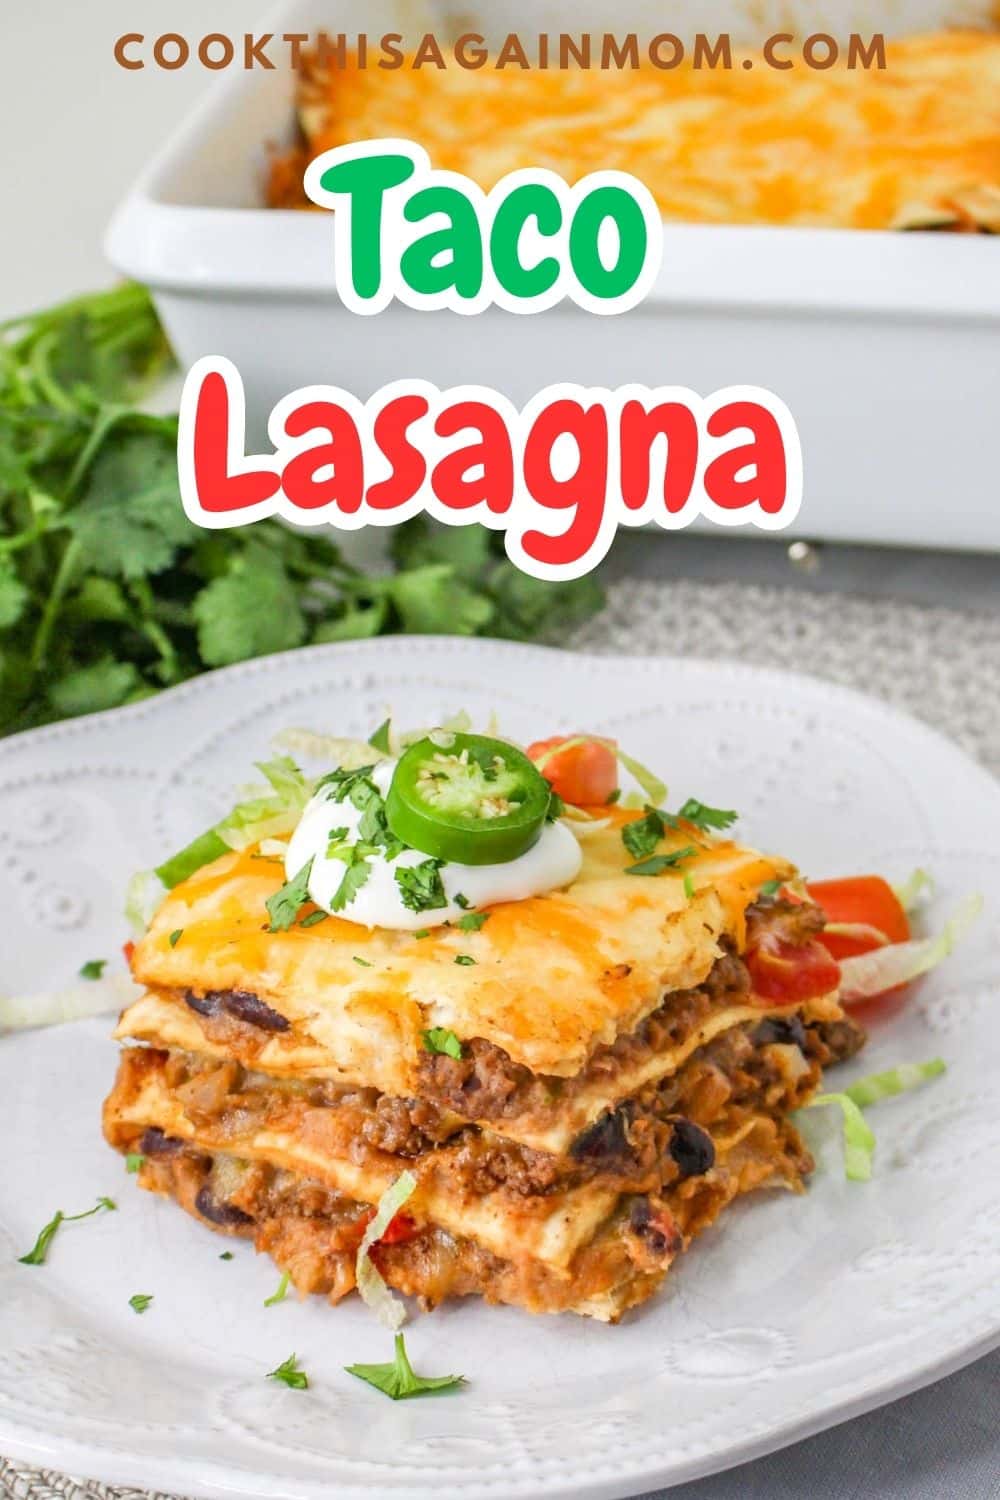 Taco Lasagna Recipe - Cook This Again Mom